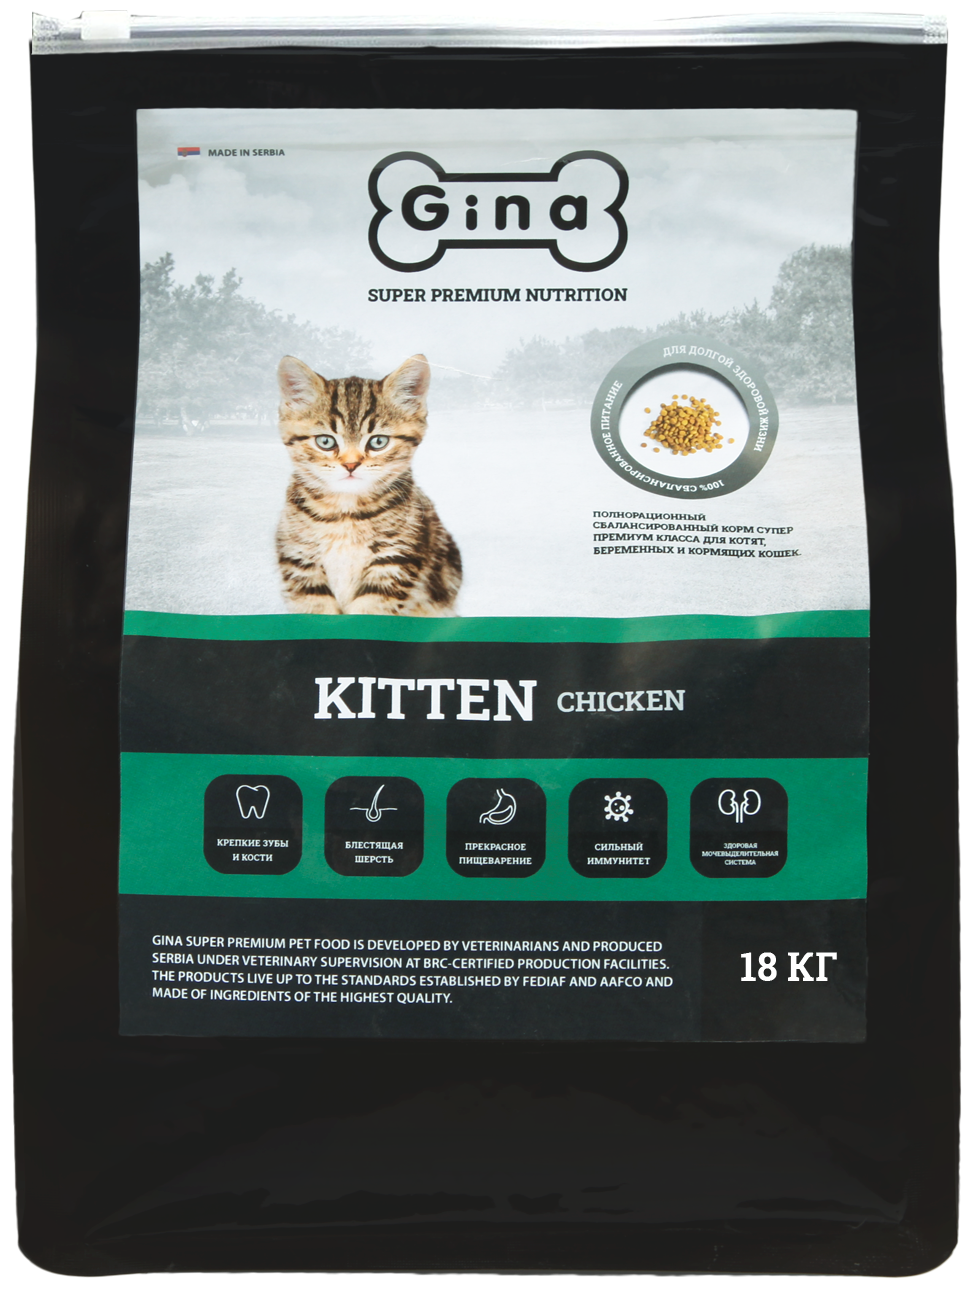 Сухой корм Gina полнорационный супер премиум класса для котят, беременных и кормящих кошек Kitten Chicken 18 кг